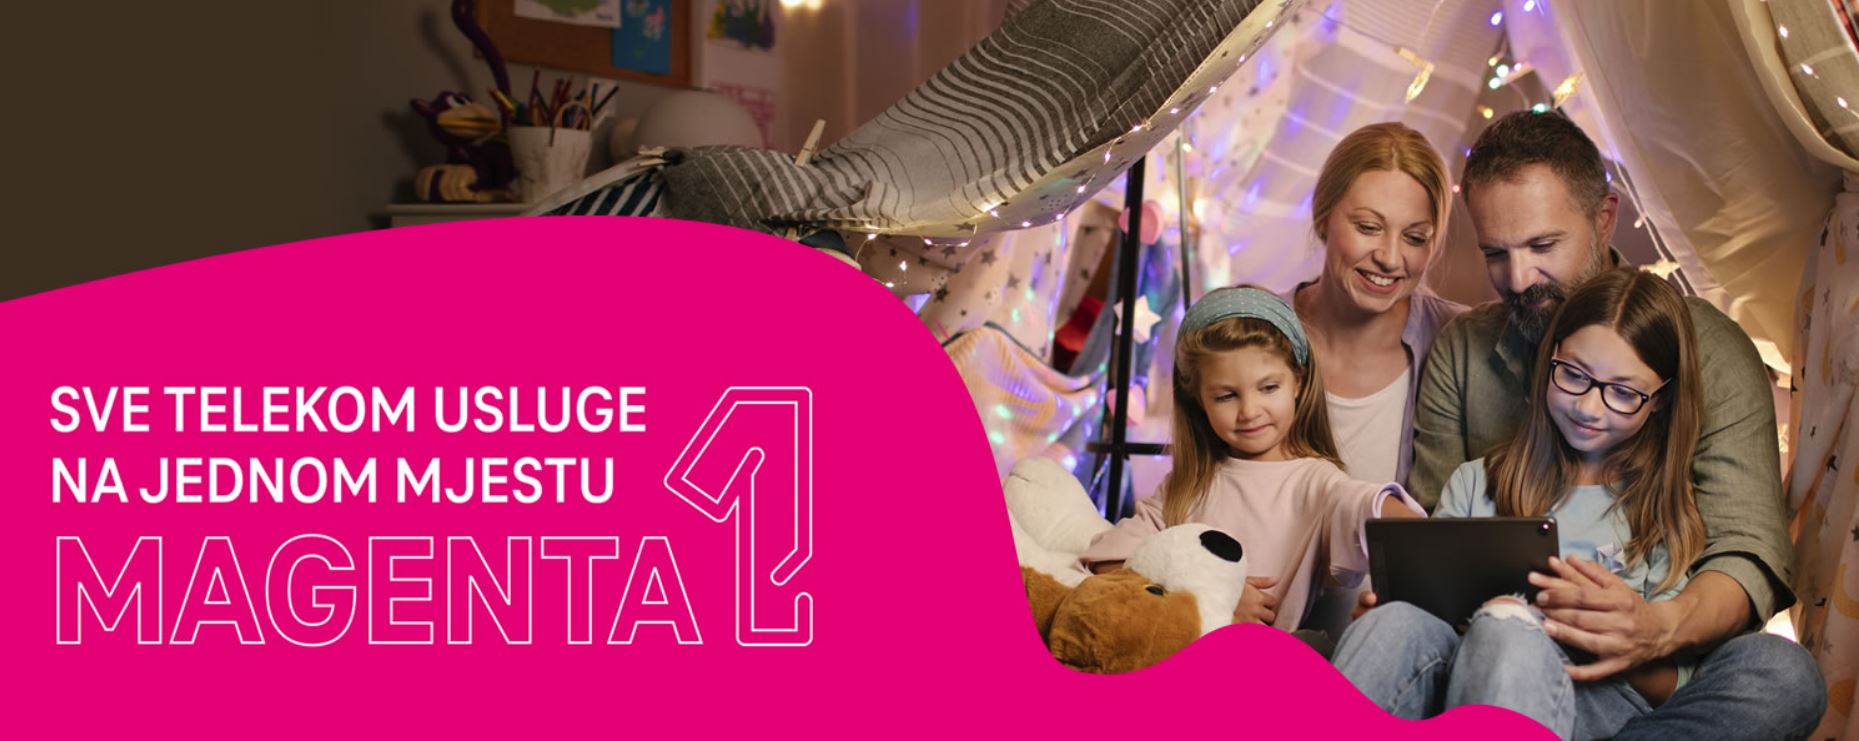 Telekom Magenta 1 poklon za početak škole: Pametni sat za djecu sa minutima i internetom